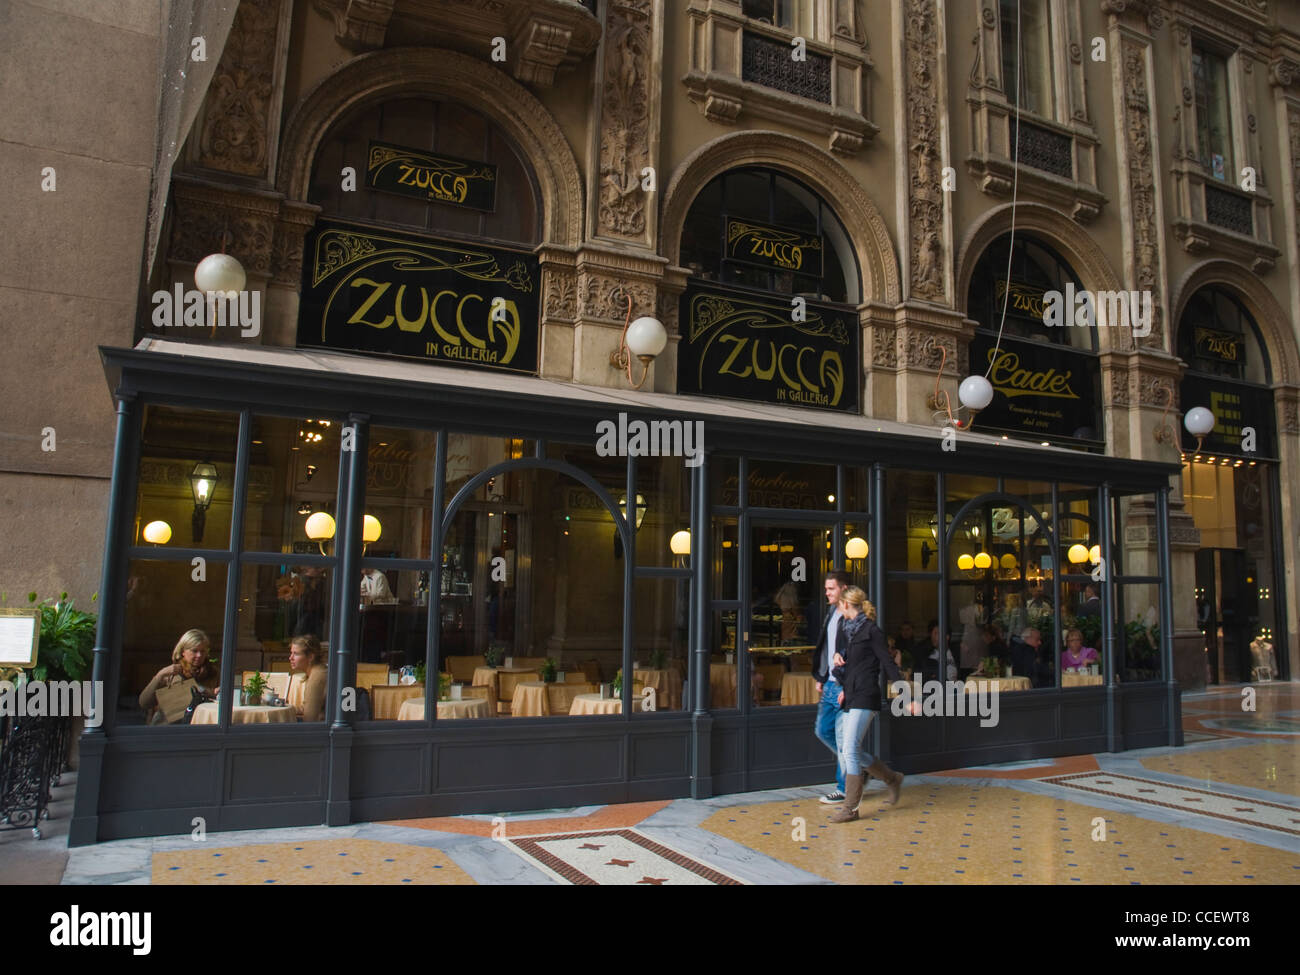 Zucca café à l'intérieur de la galerie Vittorio Emanuele II shopping centre Milan Lombardie Italie Europe Banque D'Images